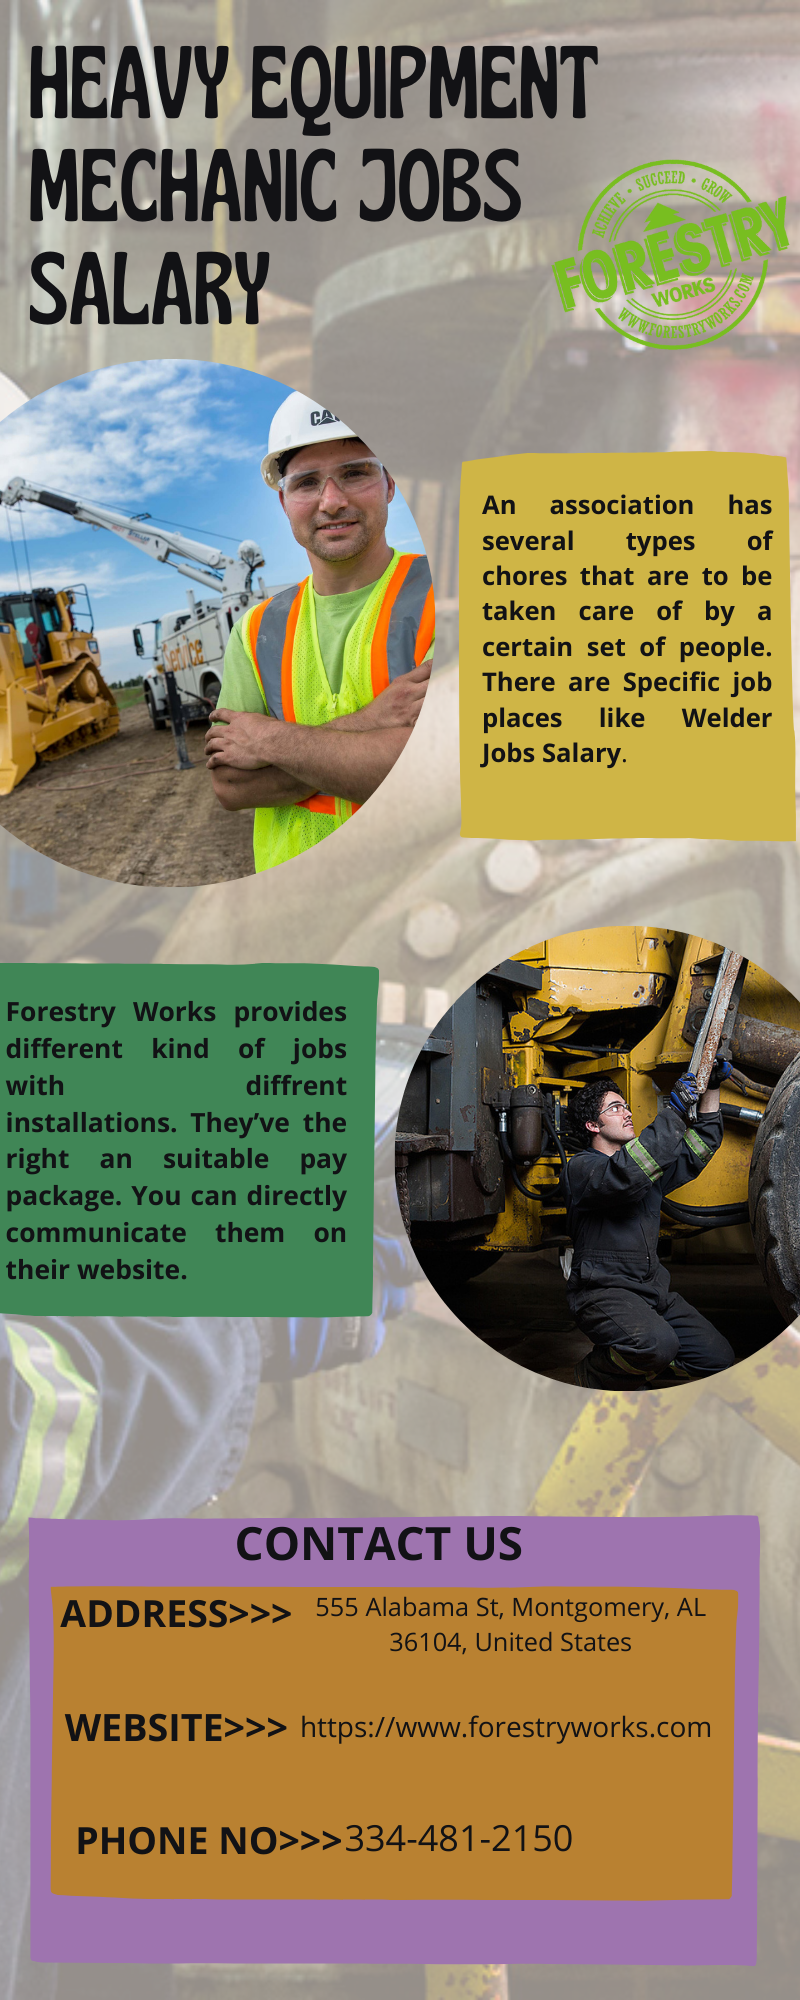 Providing heavy equipment operator jobs salary